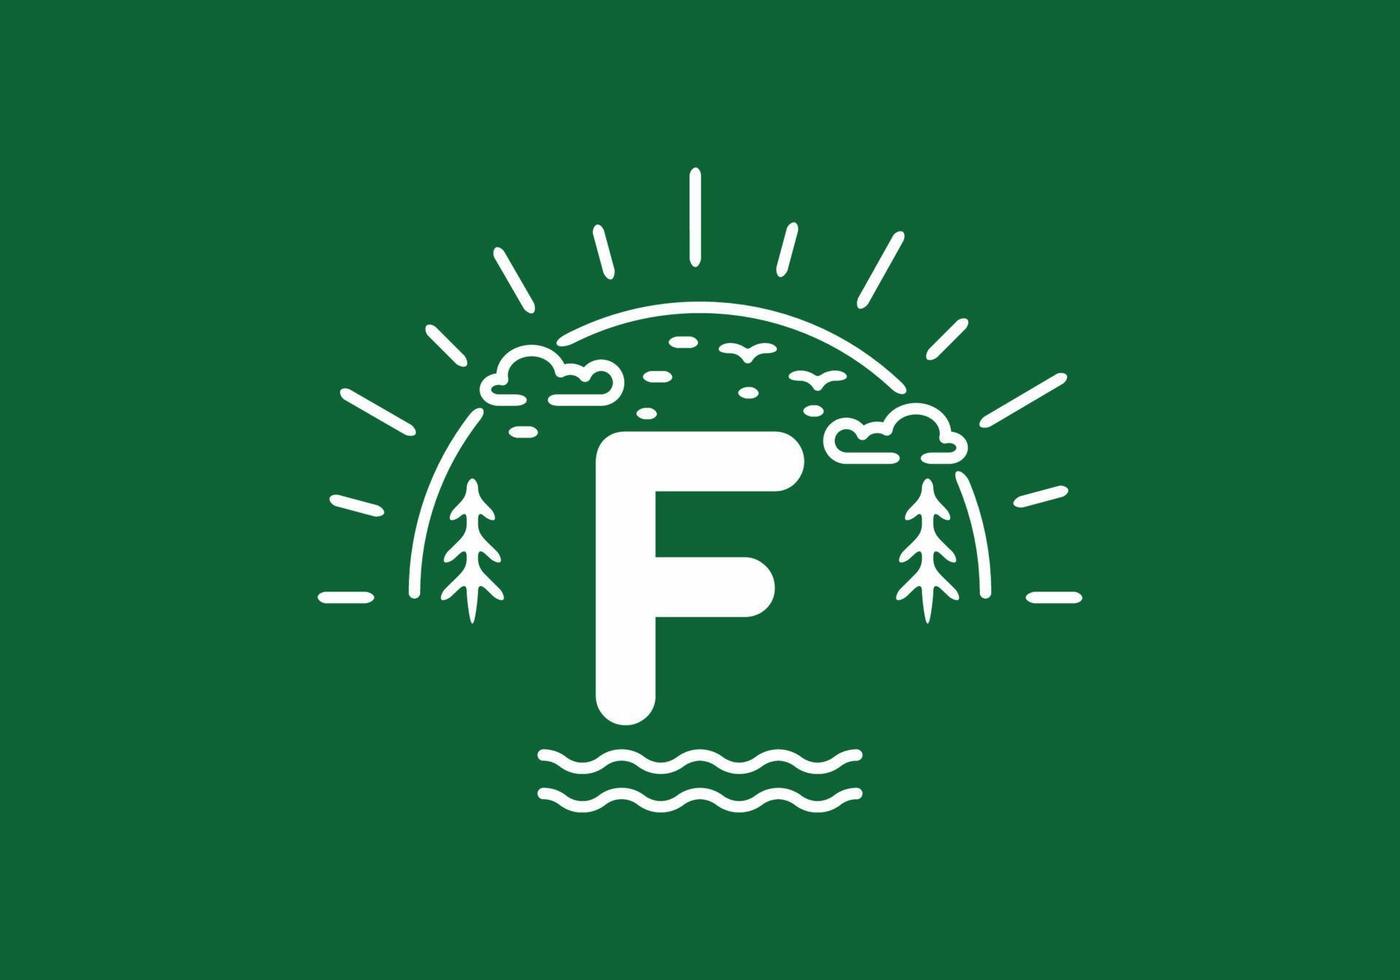 weißes grünes wildes naturabzeichen mit f-anfangsbuchstaben vektor